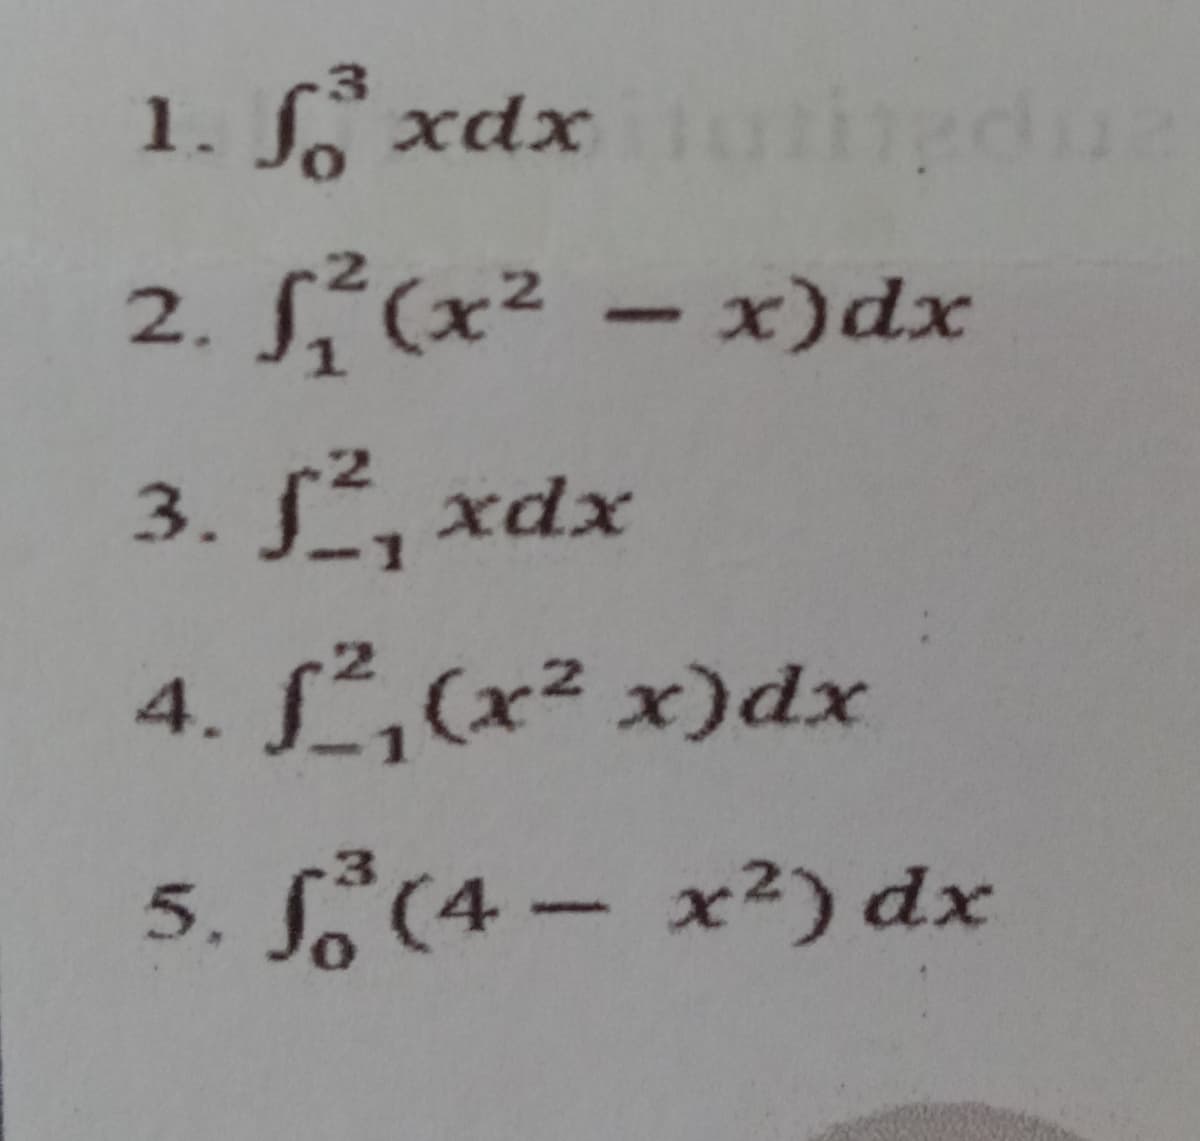 fo xdx ungdua
1.
2.
1²(x²-x)dx
3. J, xdx
4. f²₁(x² x)dx
5. f (4- x²) dx